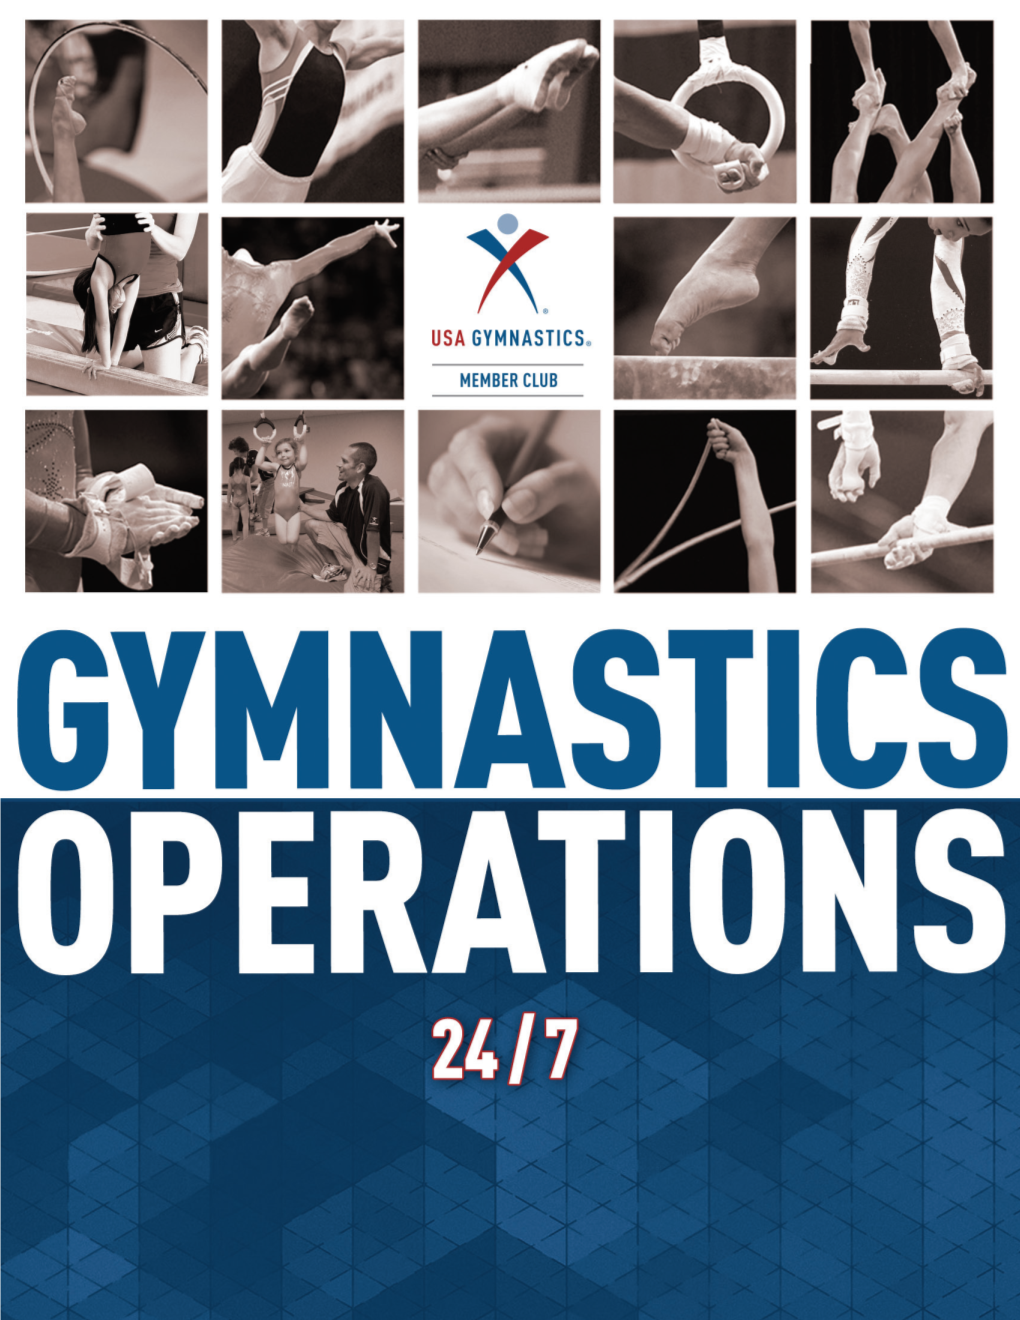 Gymnastics Operations 24/7 1 Dear Club Owners